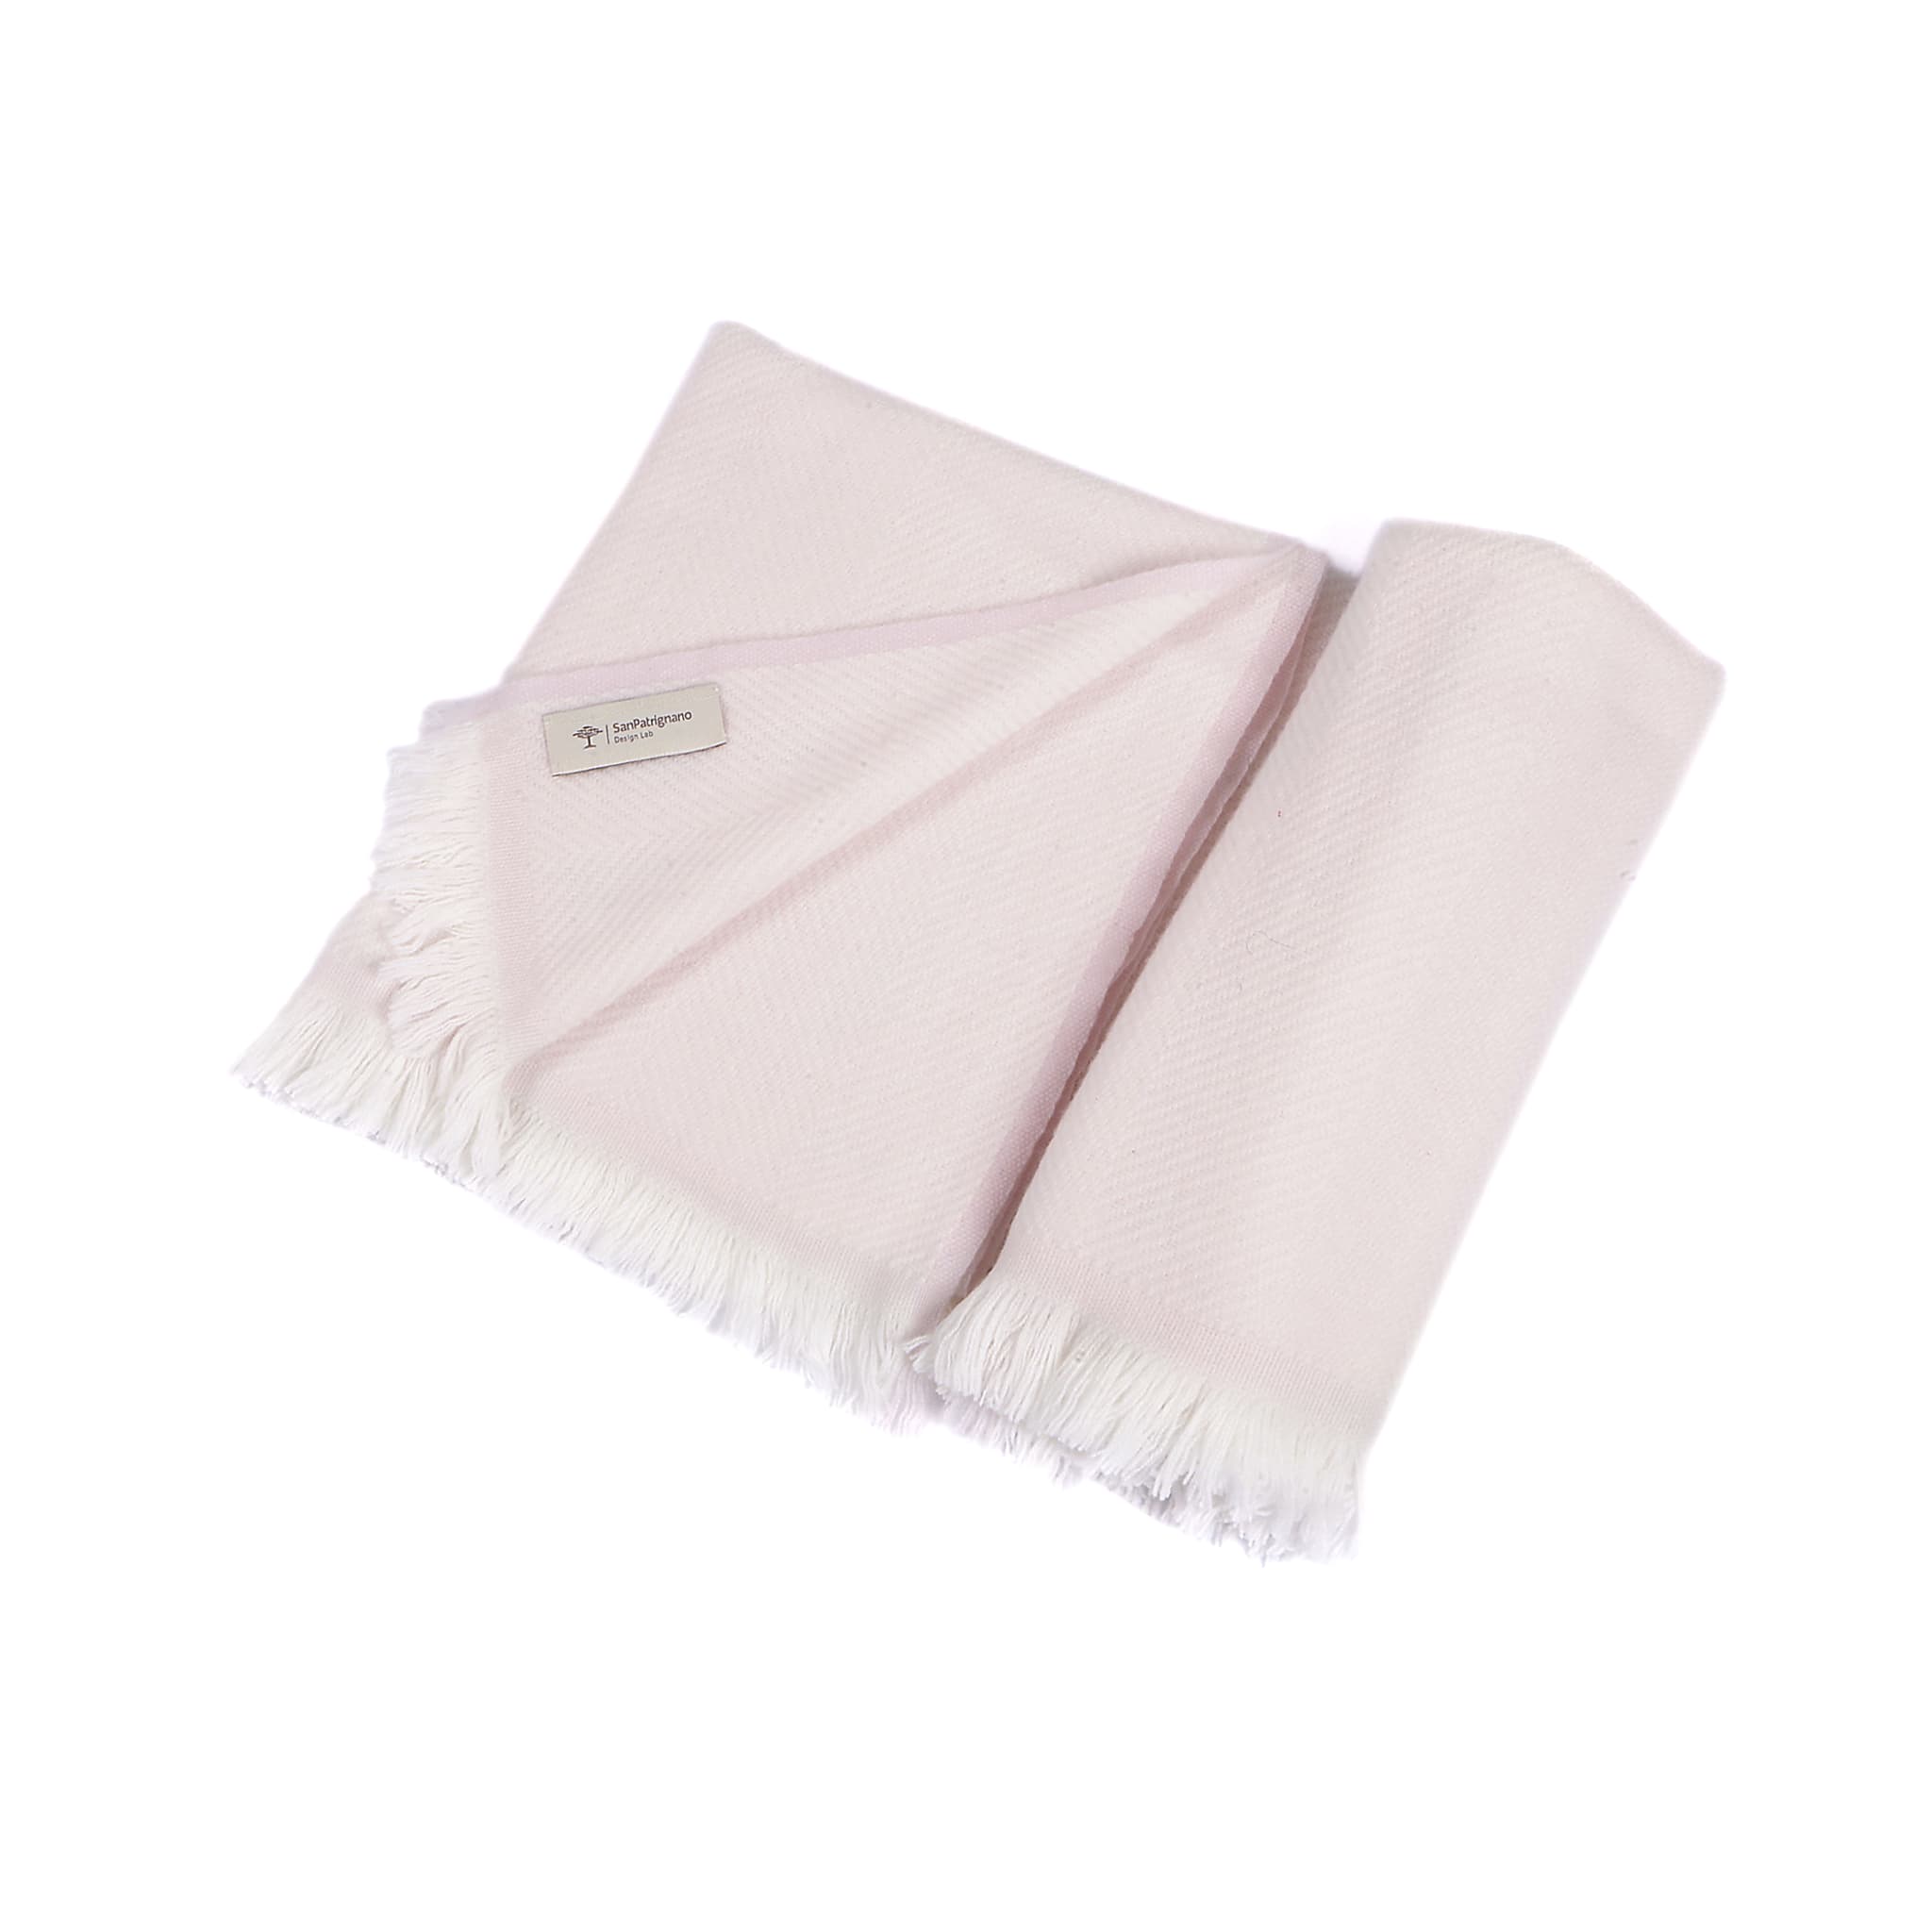 Coperta per neonati in 100% cashmere color crema e rosa tenue con frange corte - Vista principale